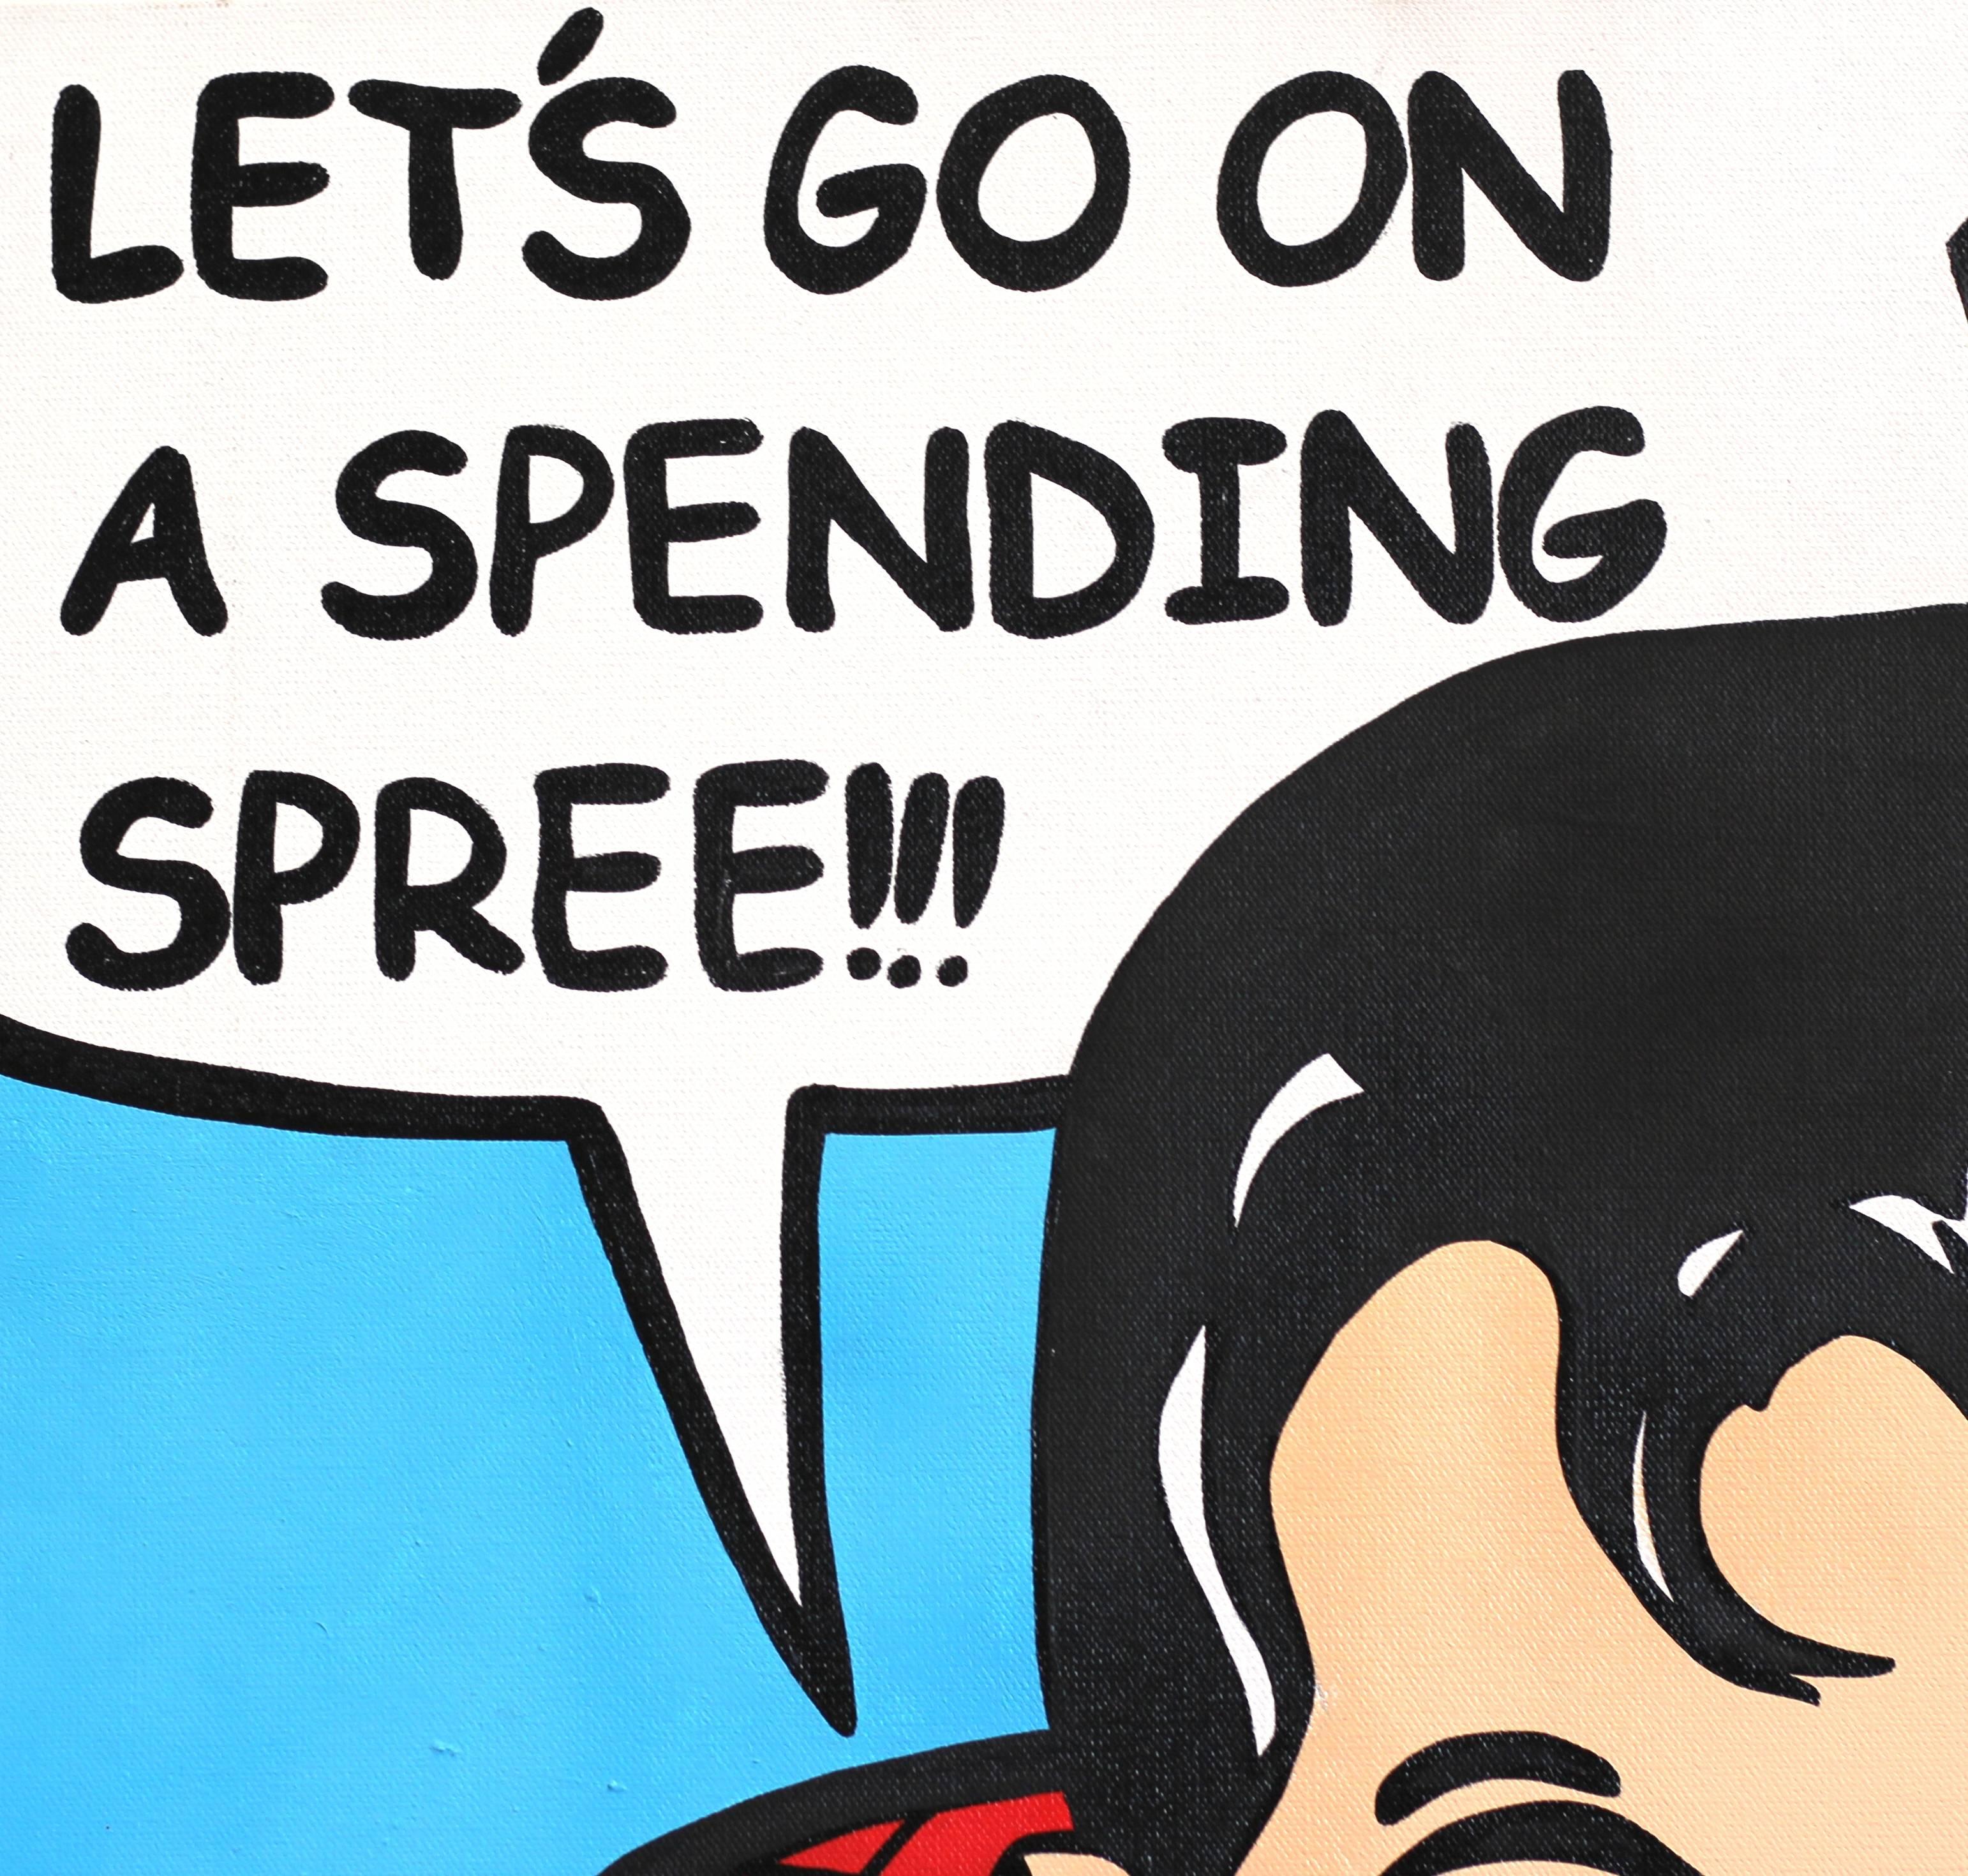 Spending Spree 1